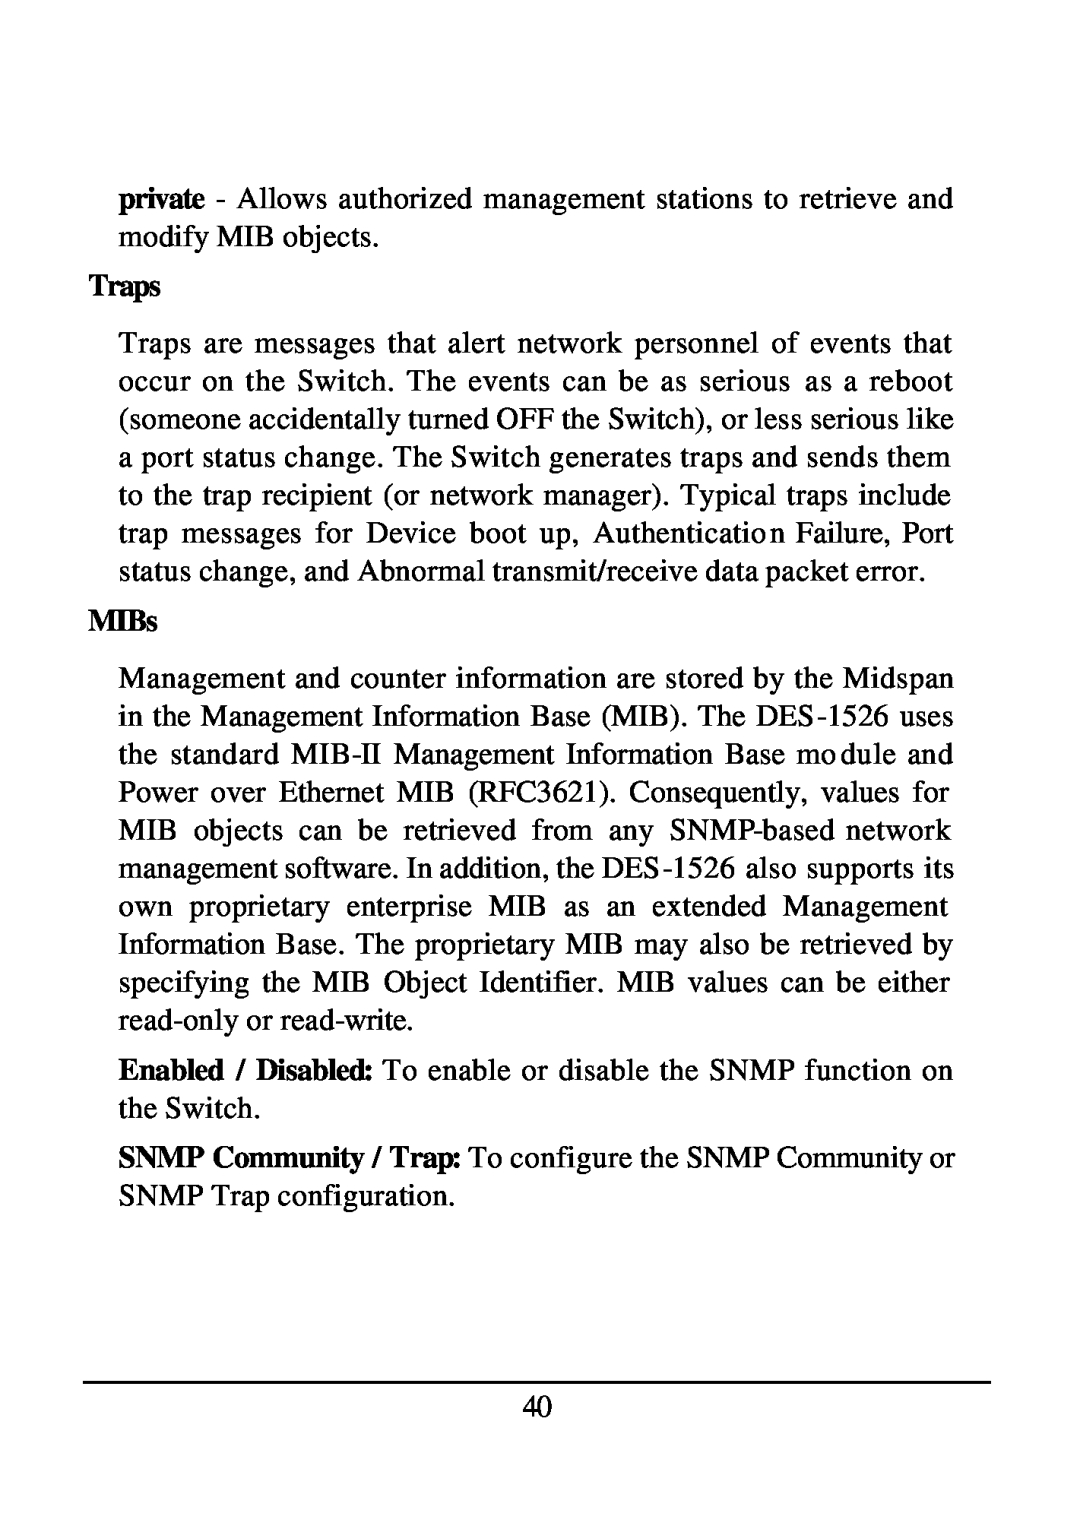 D-Link DES-1526 manual Traps, MIBs 